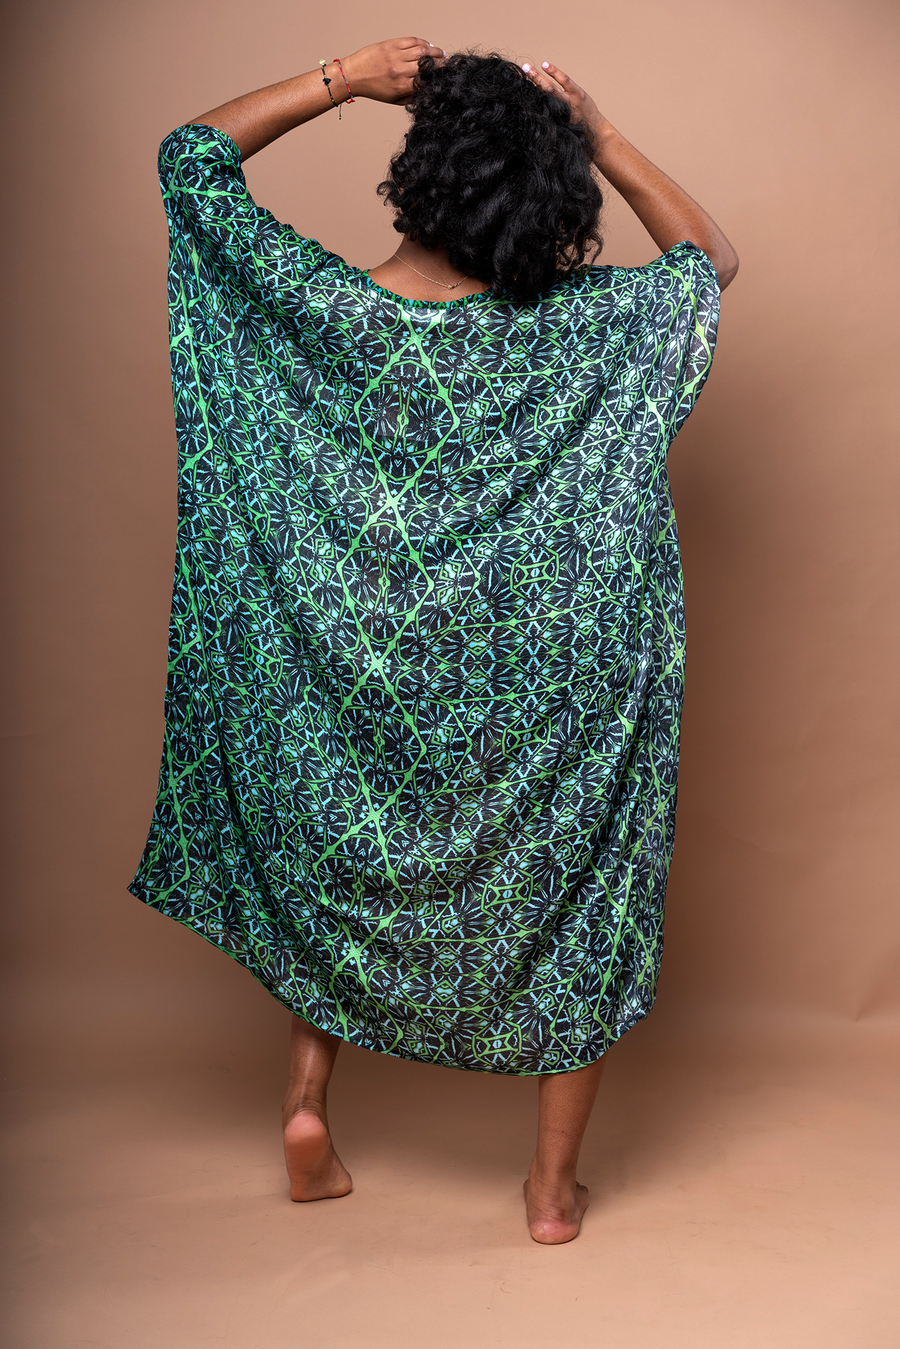 Akila Kimono Wrap Dress - Octavia Lazer Iguana - Furkat & Robbie